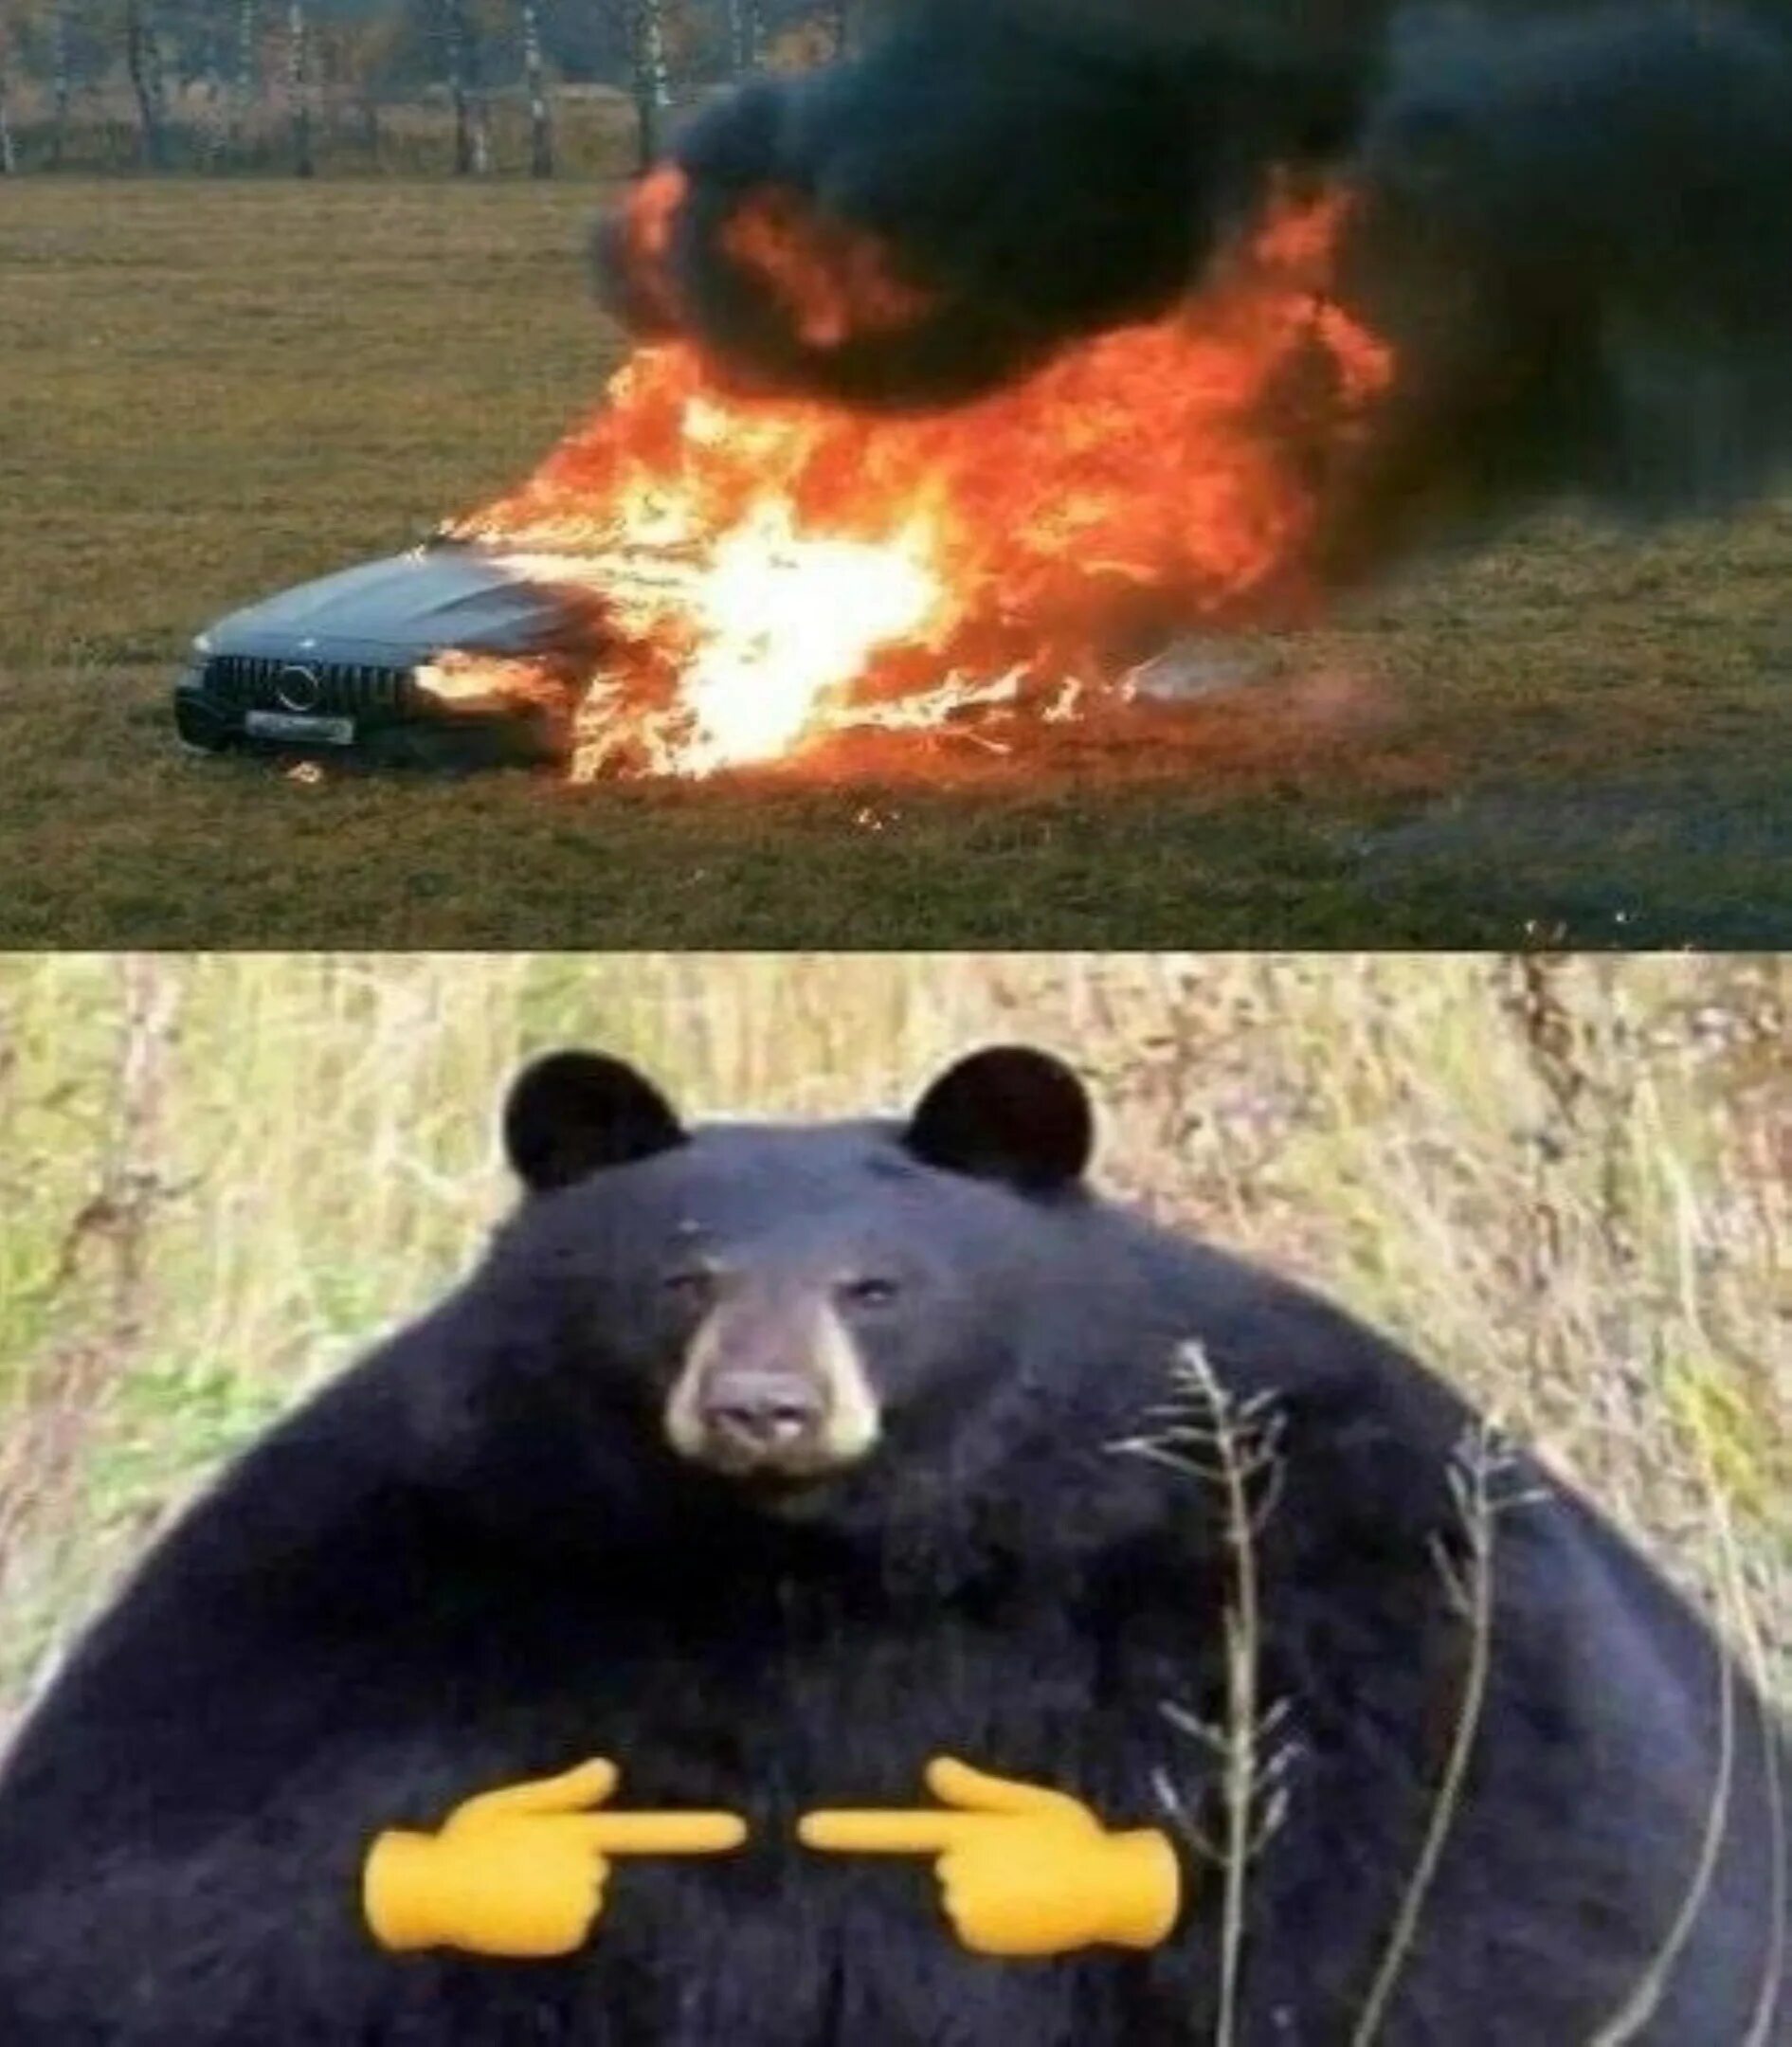 Медведь сгорел в машине. Горящий медведь. Медведь в горящей машине. Медведь сел в машину и сгорел. Шёл медведь по лесу видит машина горит.